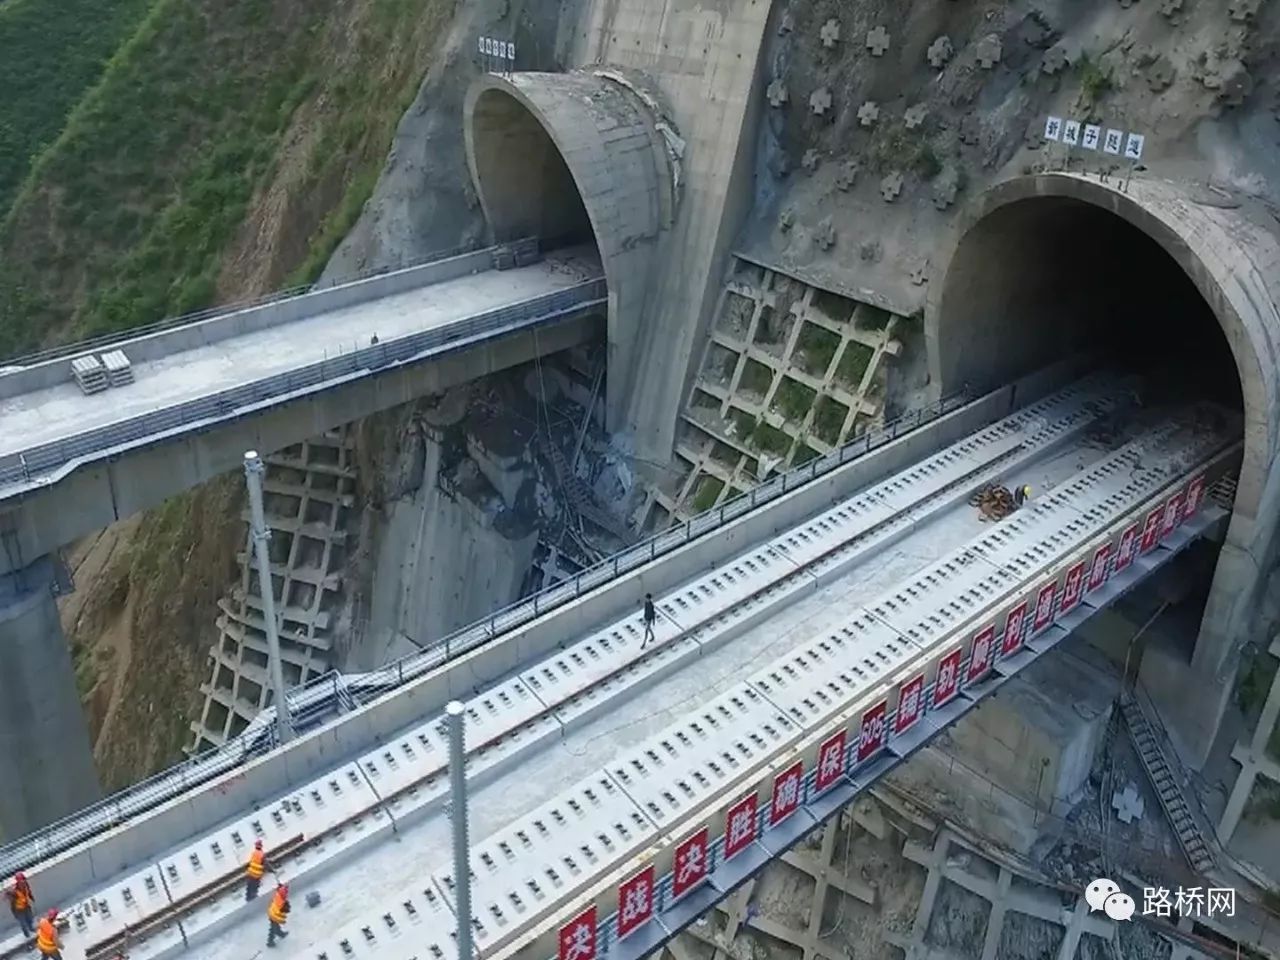 2,新城子隧道——在建铁路隧道最大断面隧道